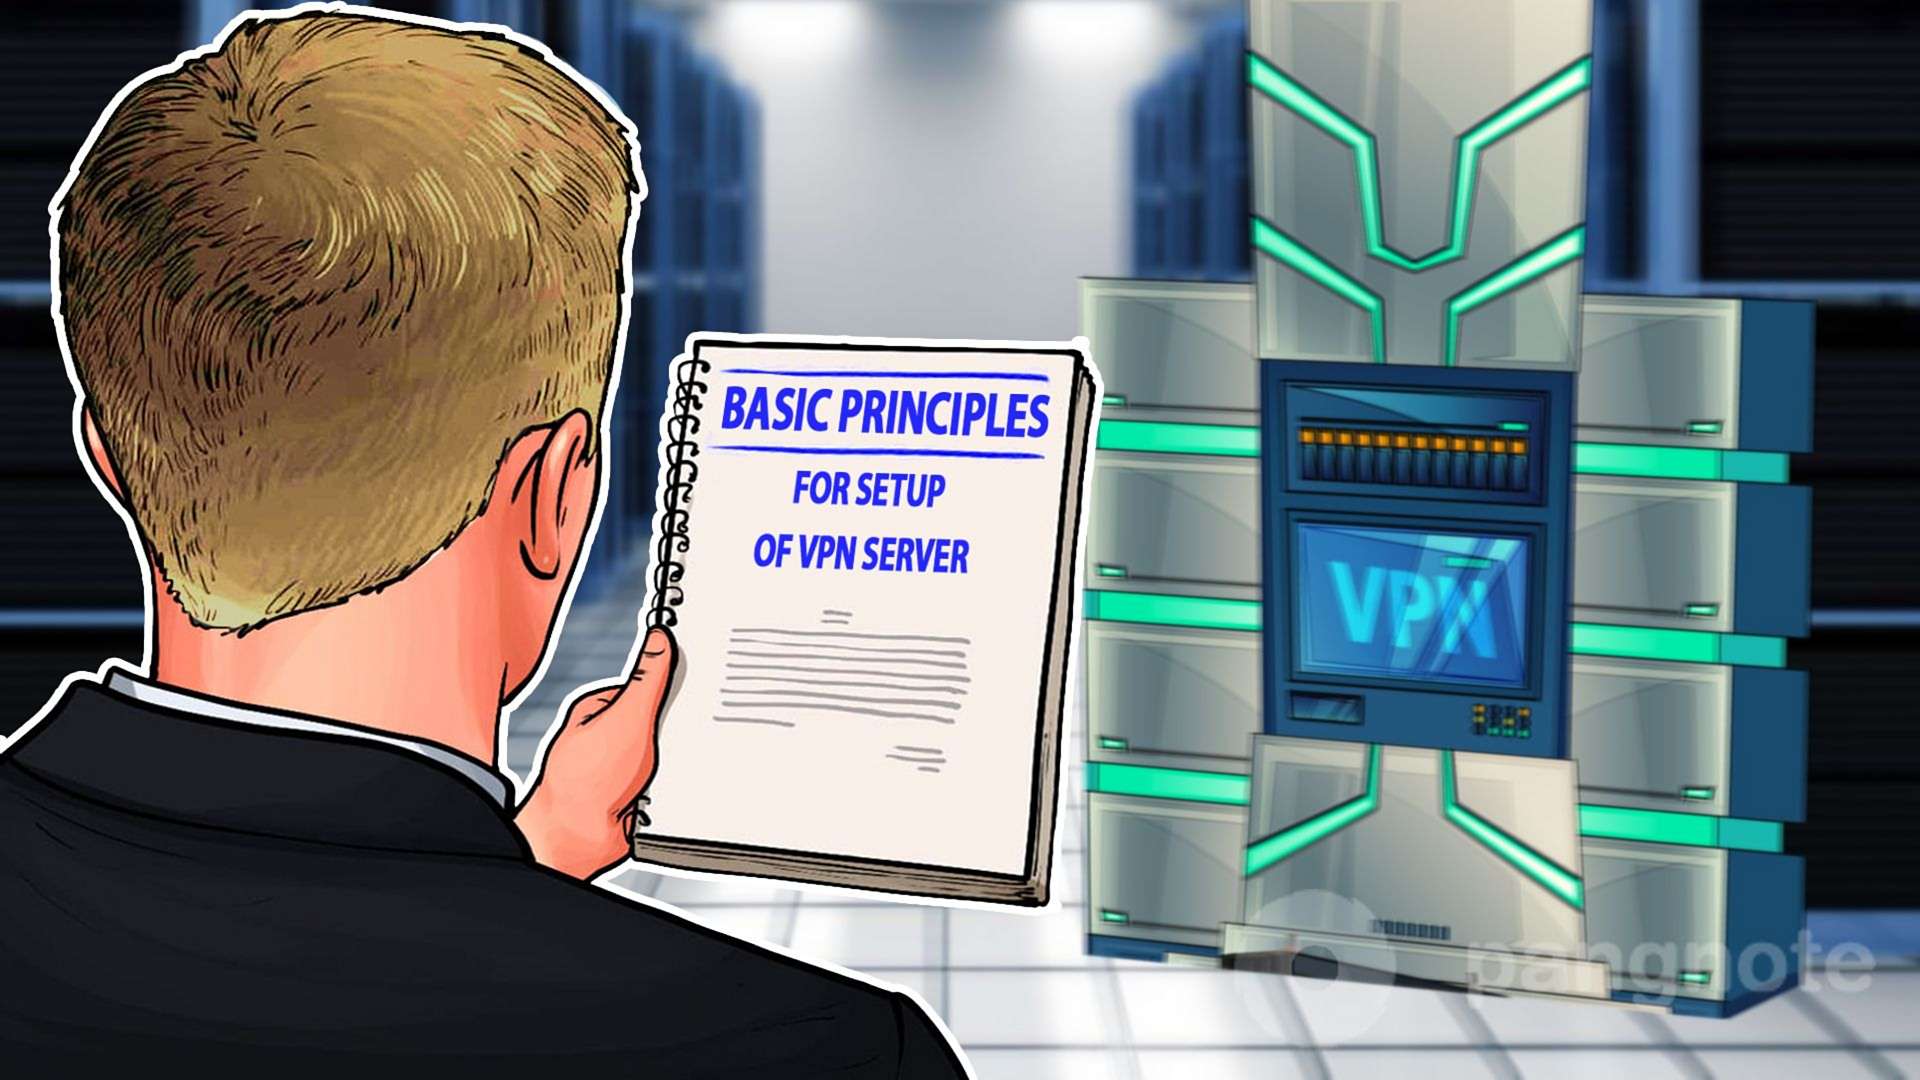  Basic principles for setup of VPN server     